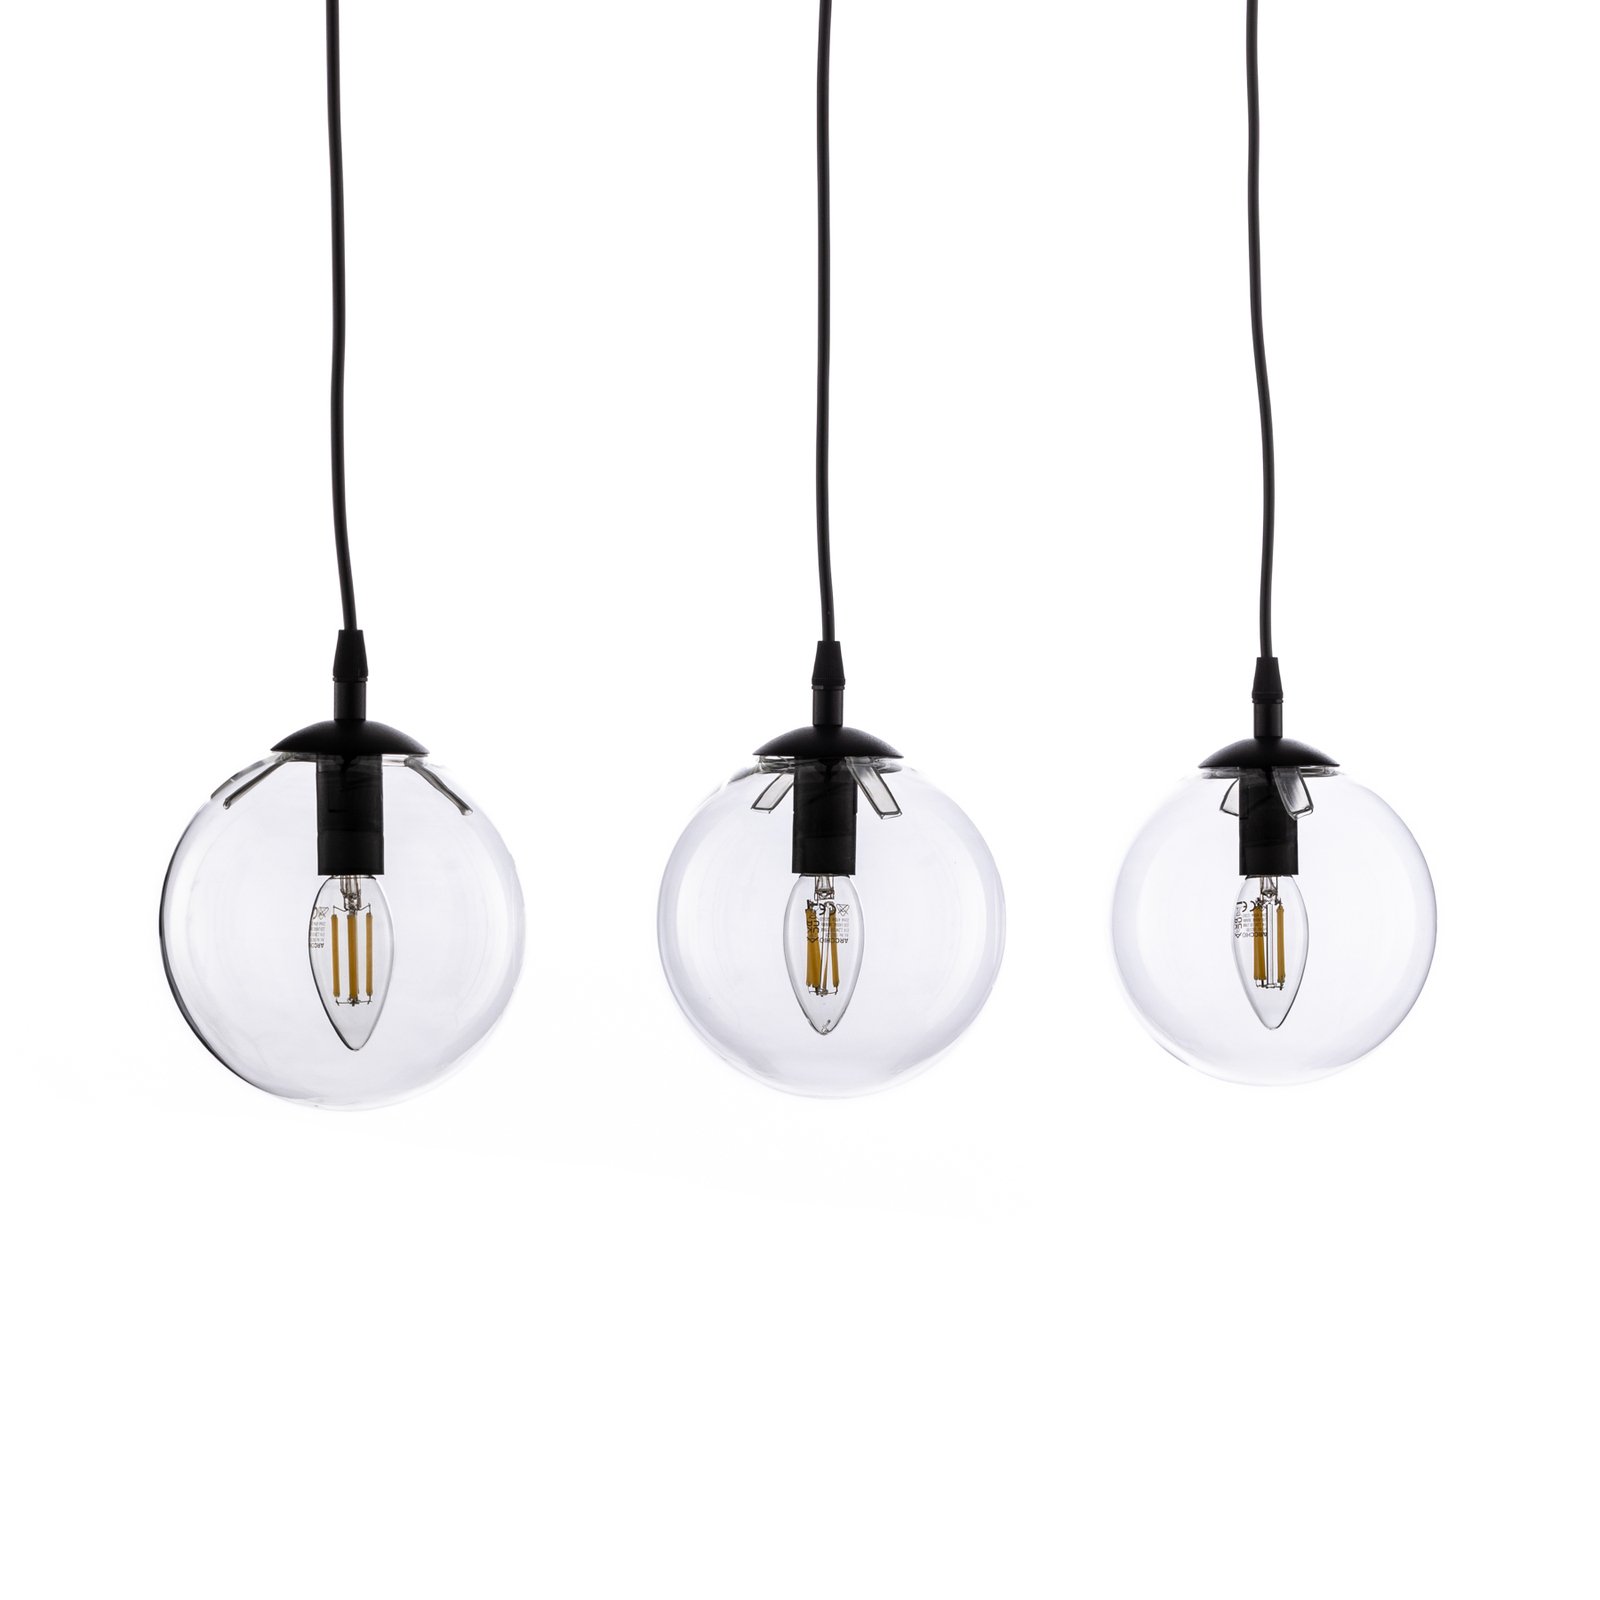 Staklena viseća svjetiljka, 3 žarulje, ravna, crna, prozirna, staklo